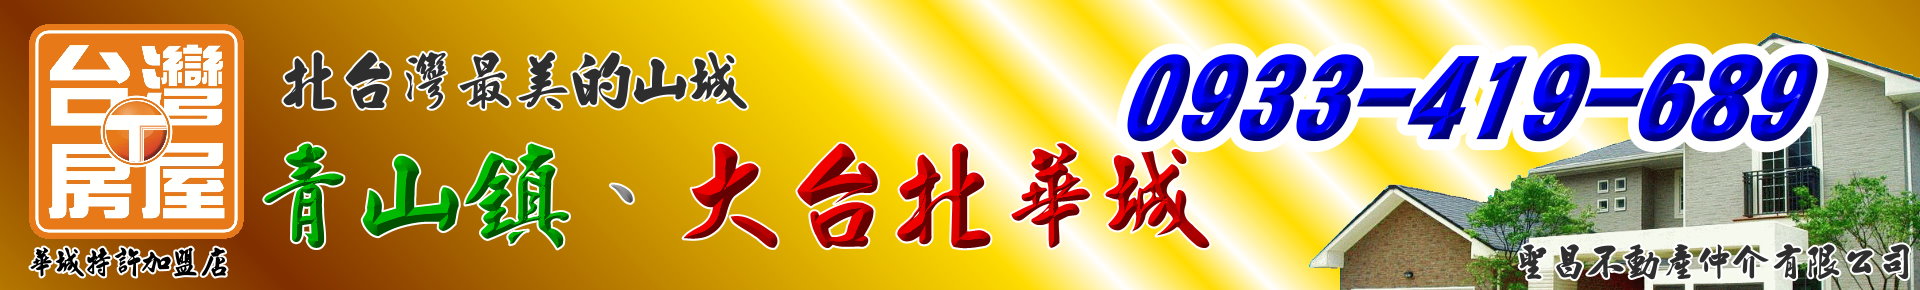 所有房屋0-【白健芬】一次委託~終身信賴(大台北華城/青山鎮) logo